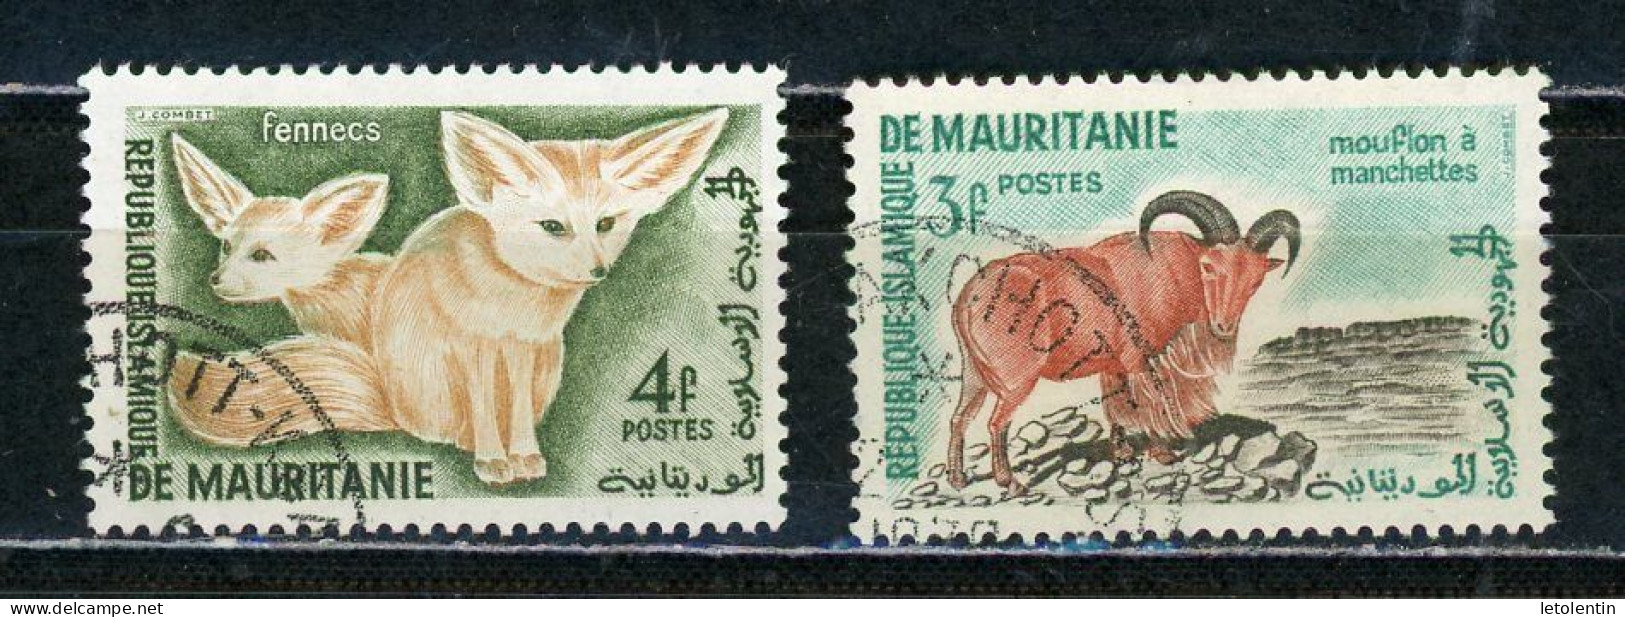 MAURITANIE : FAUNE -  N° Yvert 143+144 Obli. - Mauritanie (1960-...)